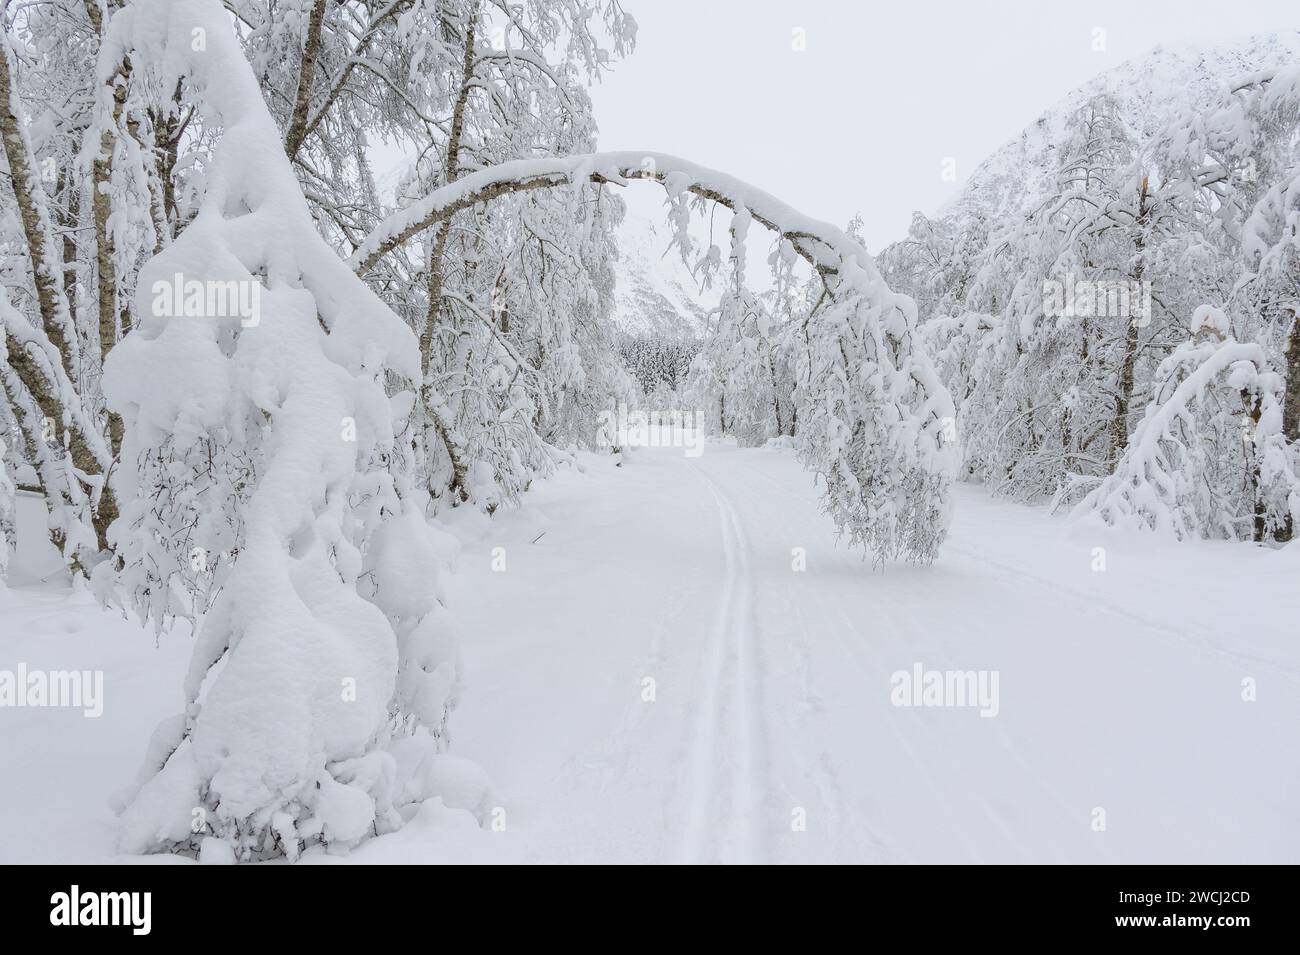 Eine beschauliche, schneebedeckte Landschaft fängt einen natürlichen Bogen ein, der durch starken Schnee geschaffen wurde, der Äste über einen abgeschiedenen Weg hinabzieht. Stockfoto